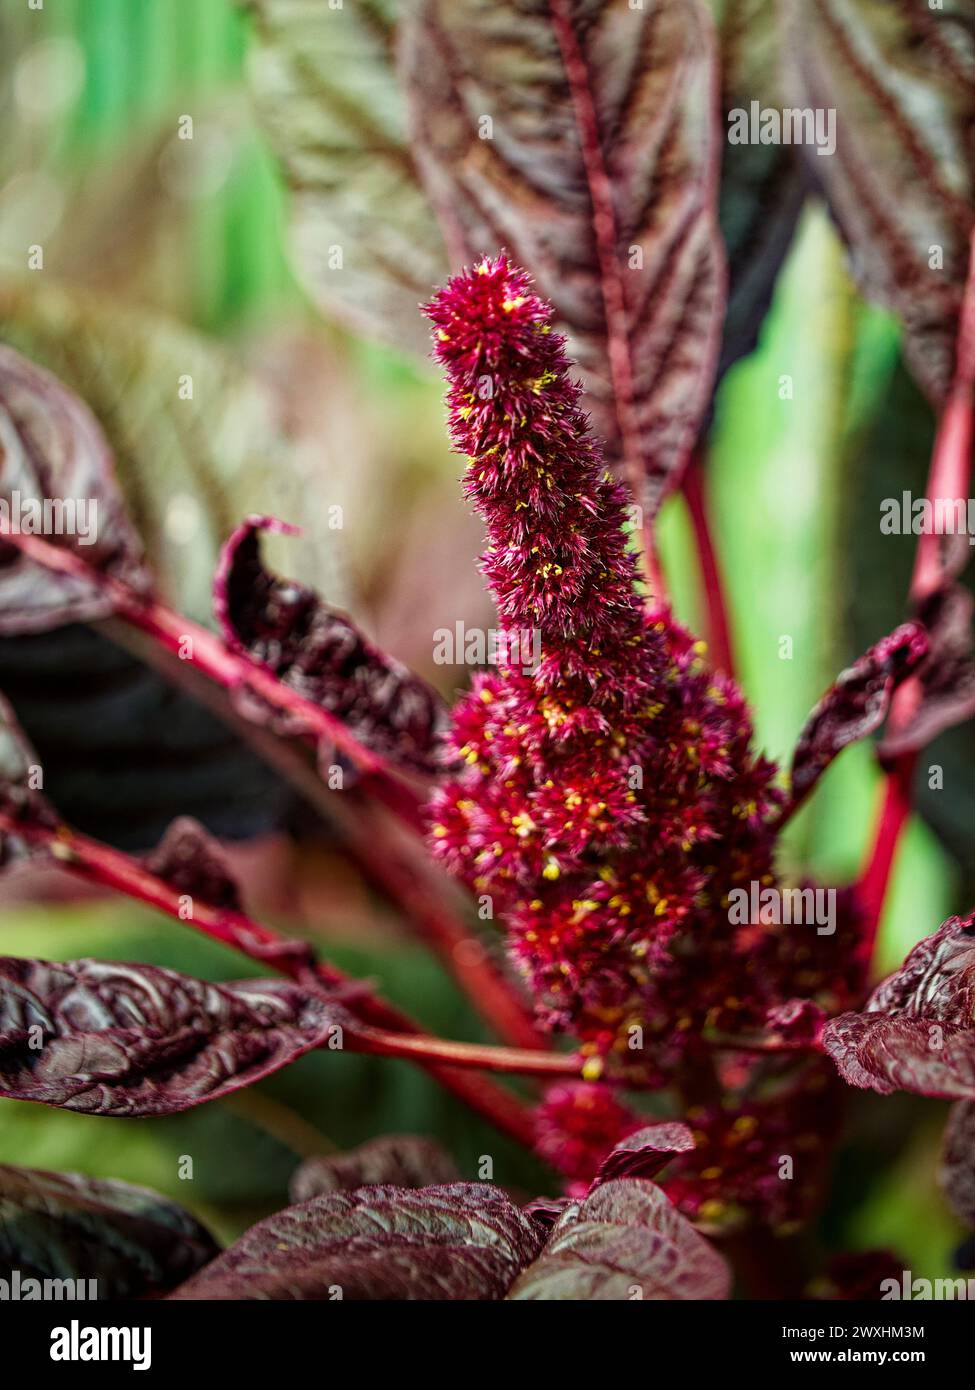 Eine leuchtend rote und lila Blume inmitten dunkelgrüner Blätter mit komplexen Details und Texturen. Stockfoto